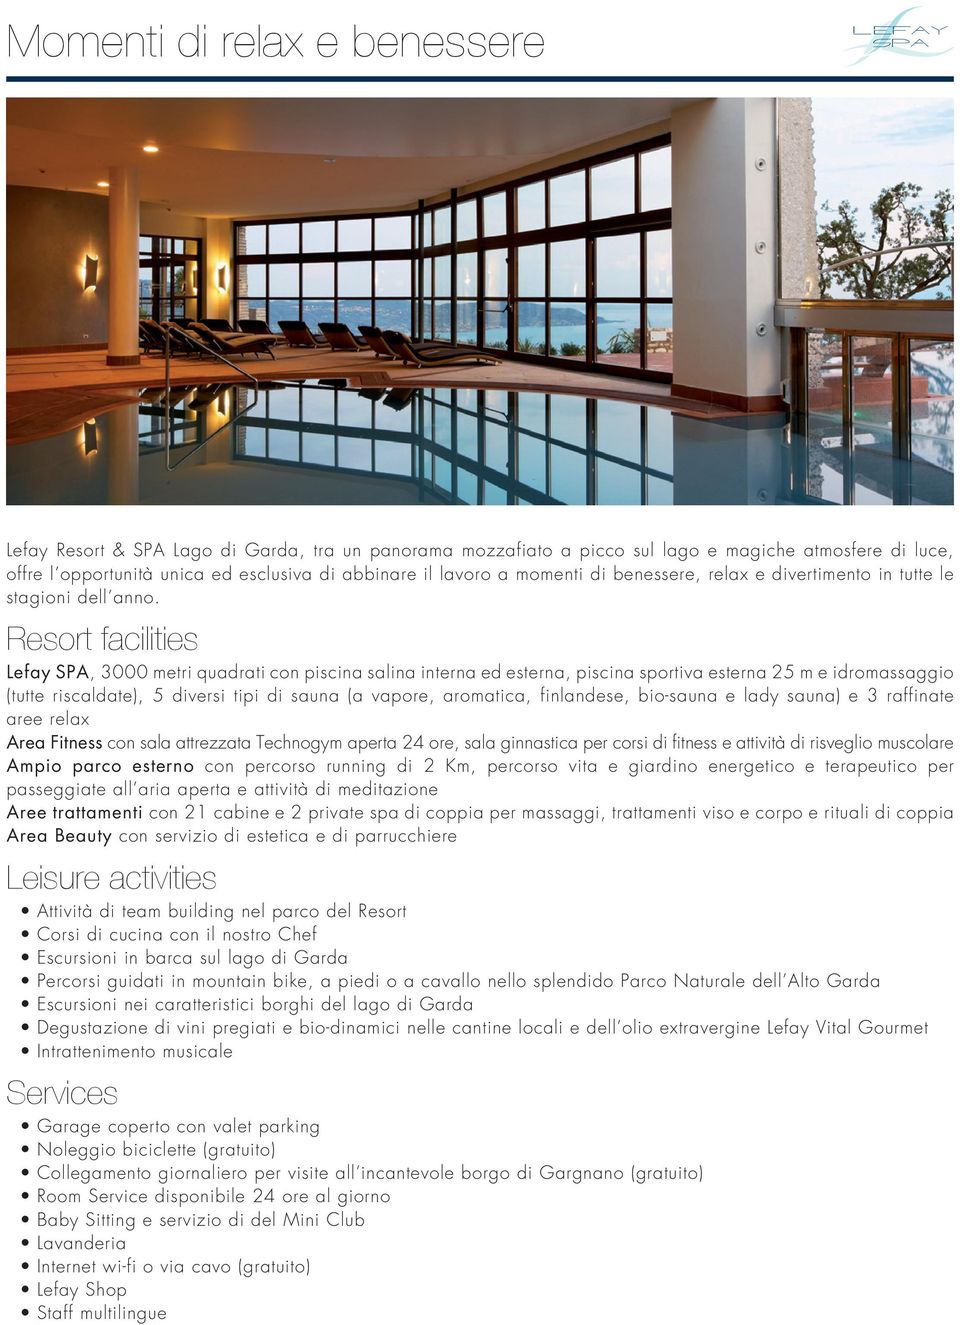 Resort facilities Lefay SPA, 3000 metri quadrati con piscina salina interna ed esterna, piscina sportiva esterna 25 m e idromassaggio (tutte riscaldate), 5 diversi tipi di sauna (a vapore, aromatica,